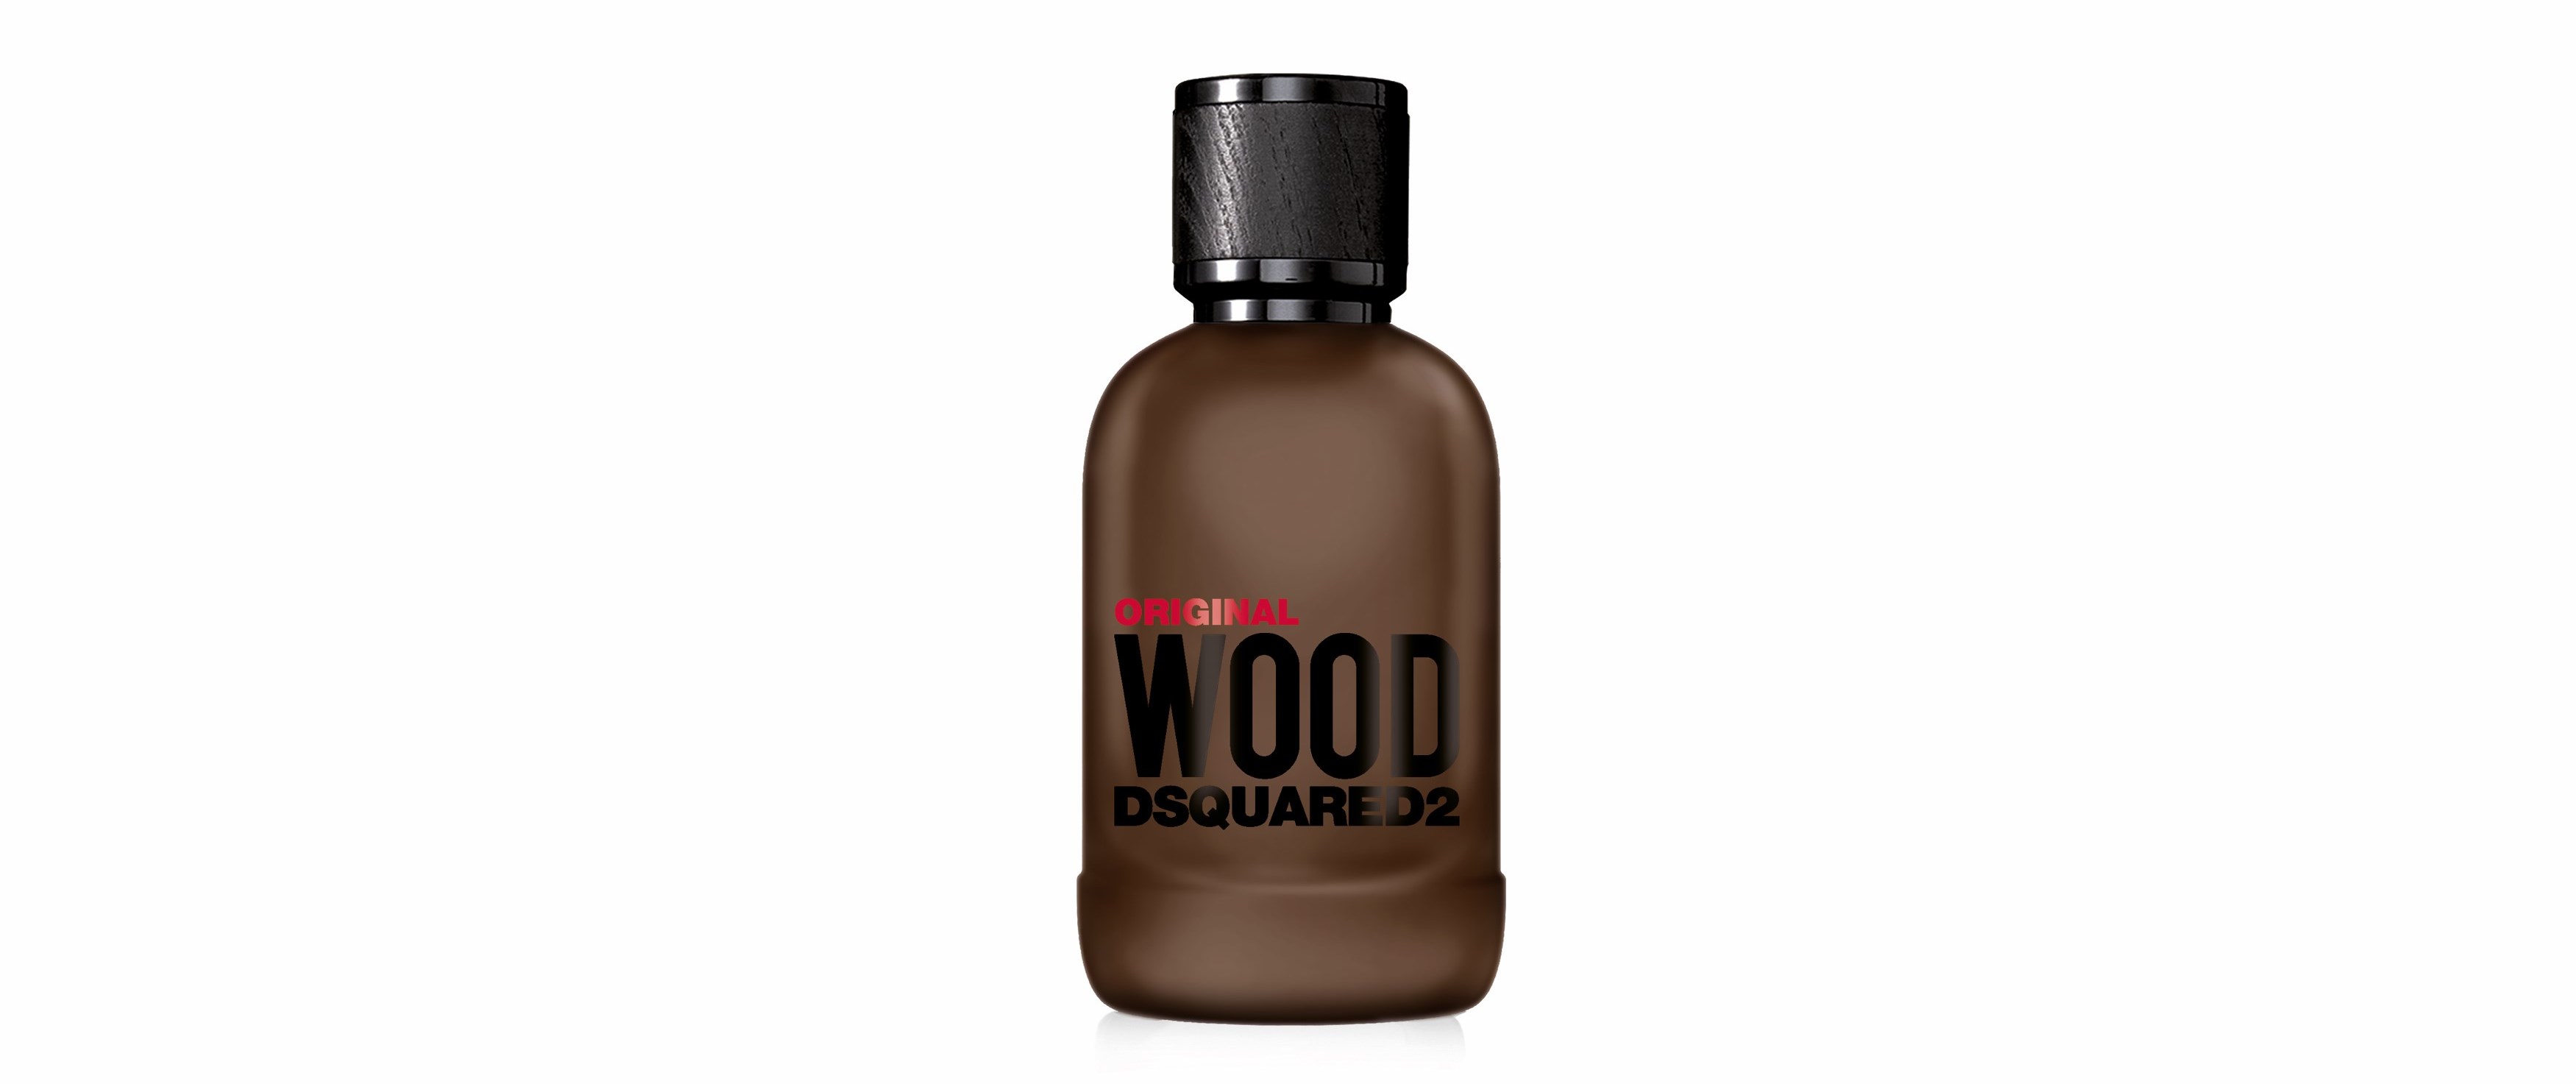 Dsquared Original Wood 2 Dsquared2 Original Wood   Hương gỗ mộc mạc dành cho người đàn ông bản lĩnh